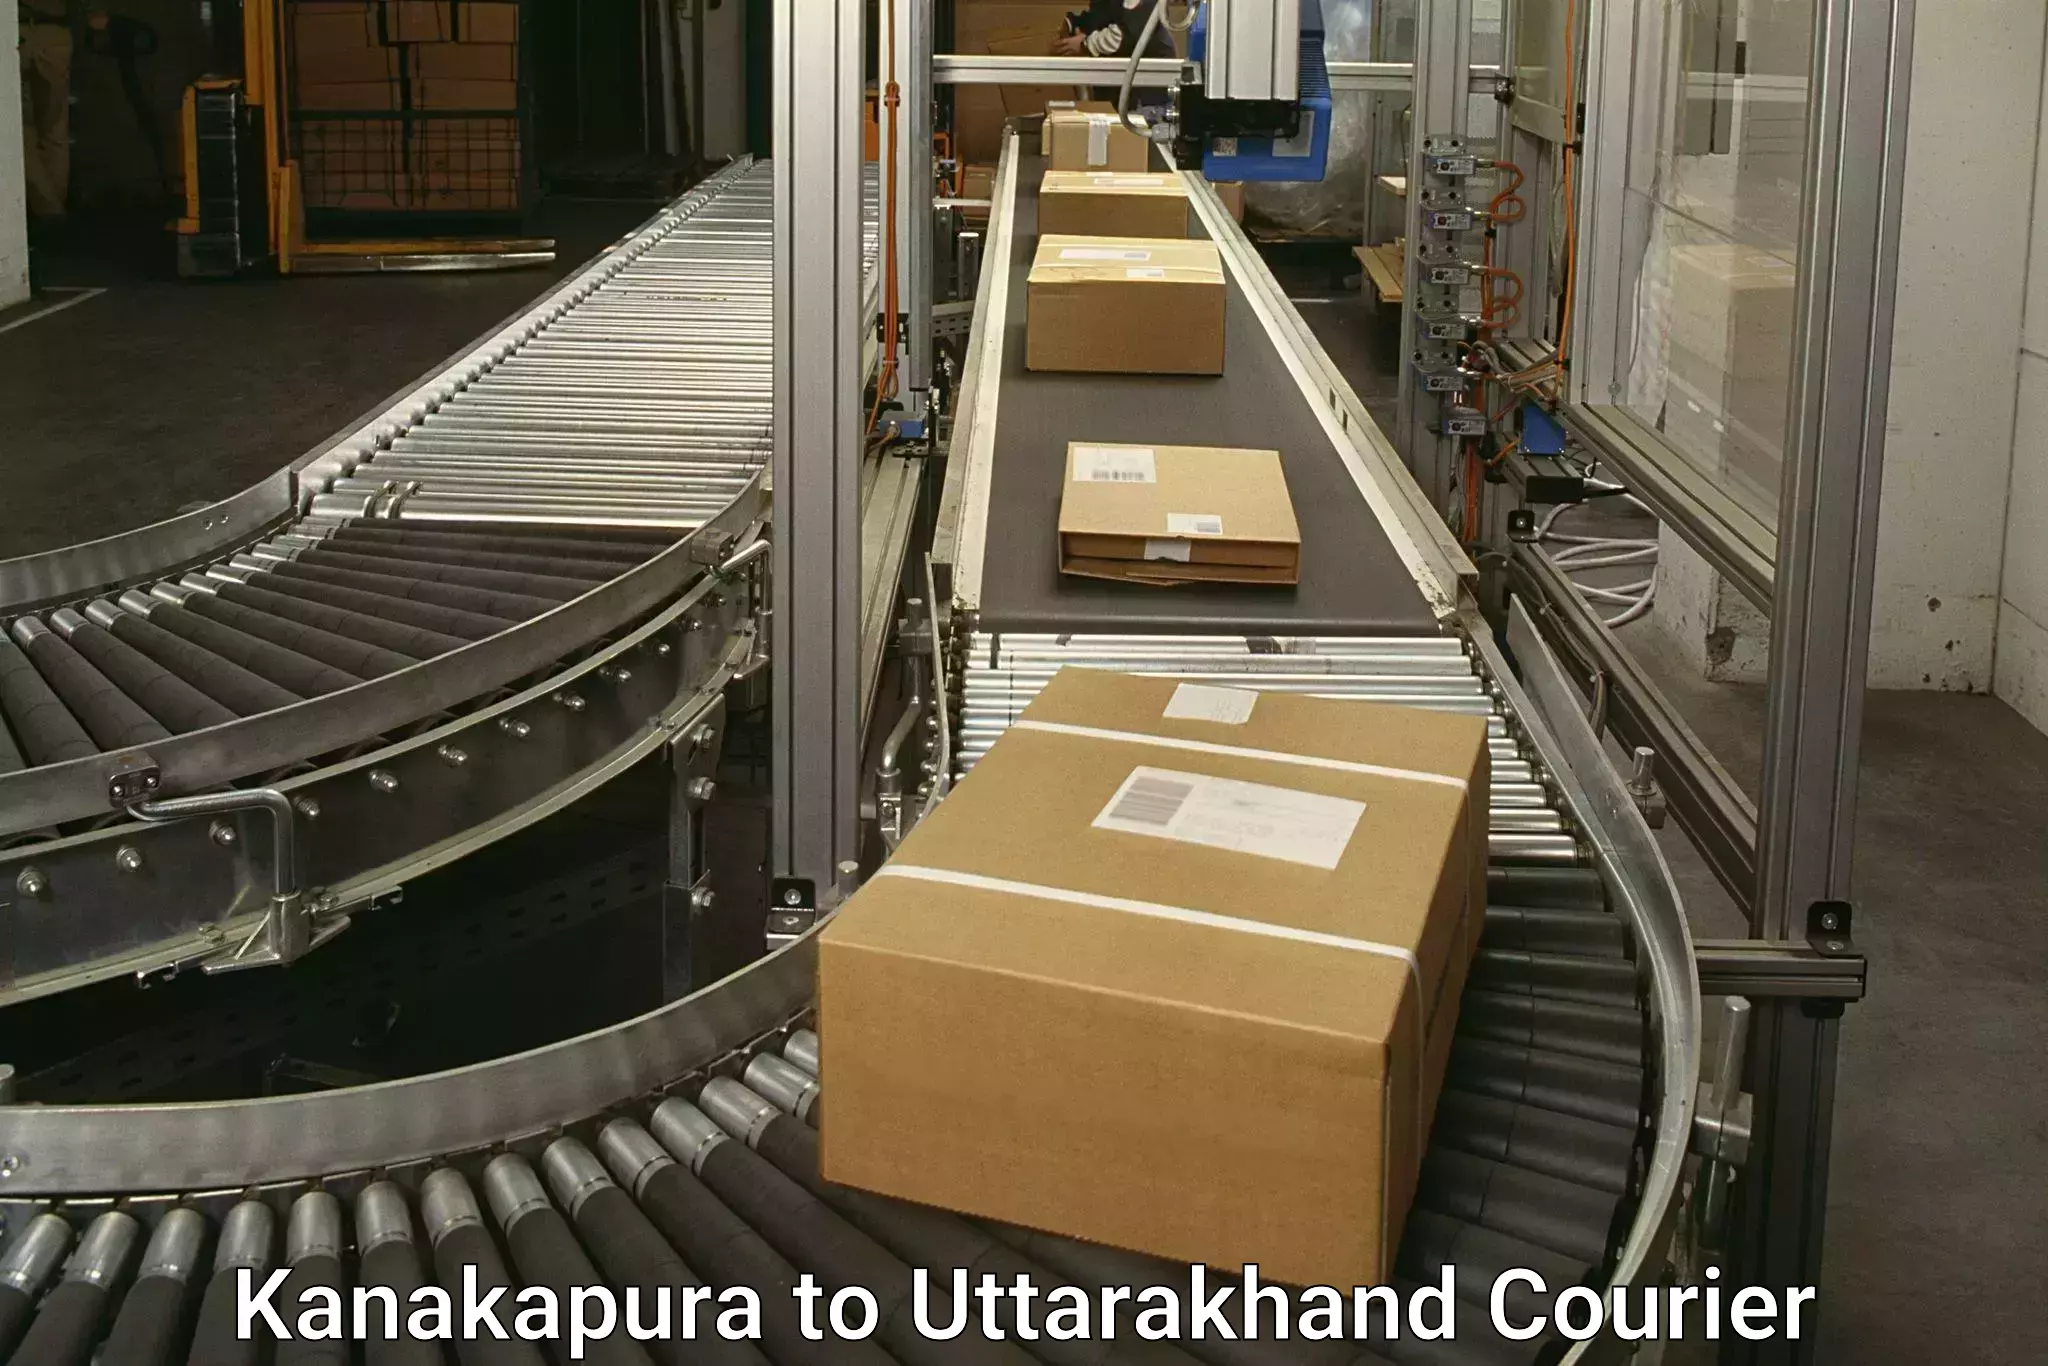 Small parcel delivery Kanakapura to Kashipur